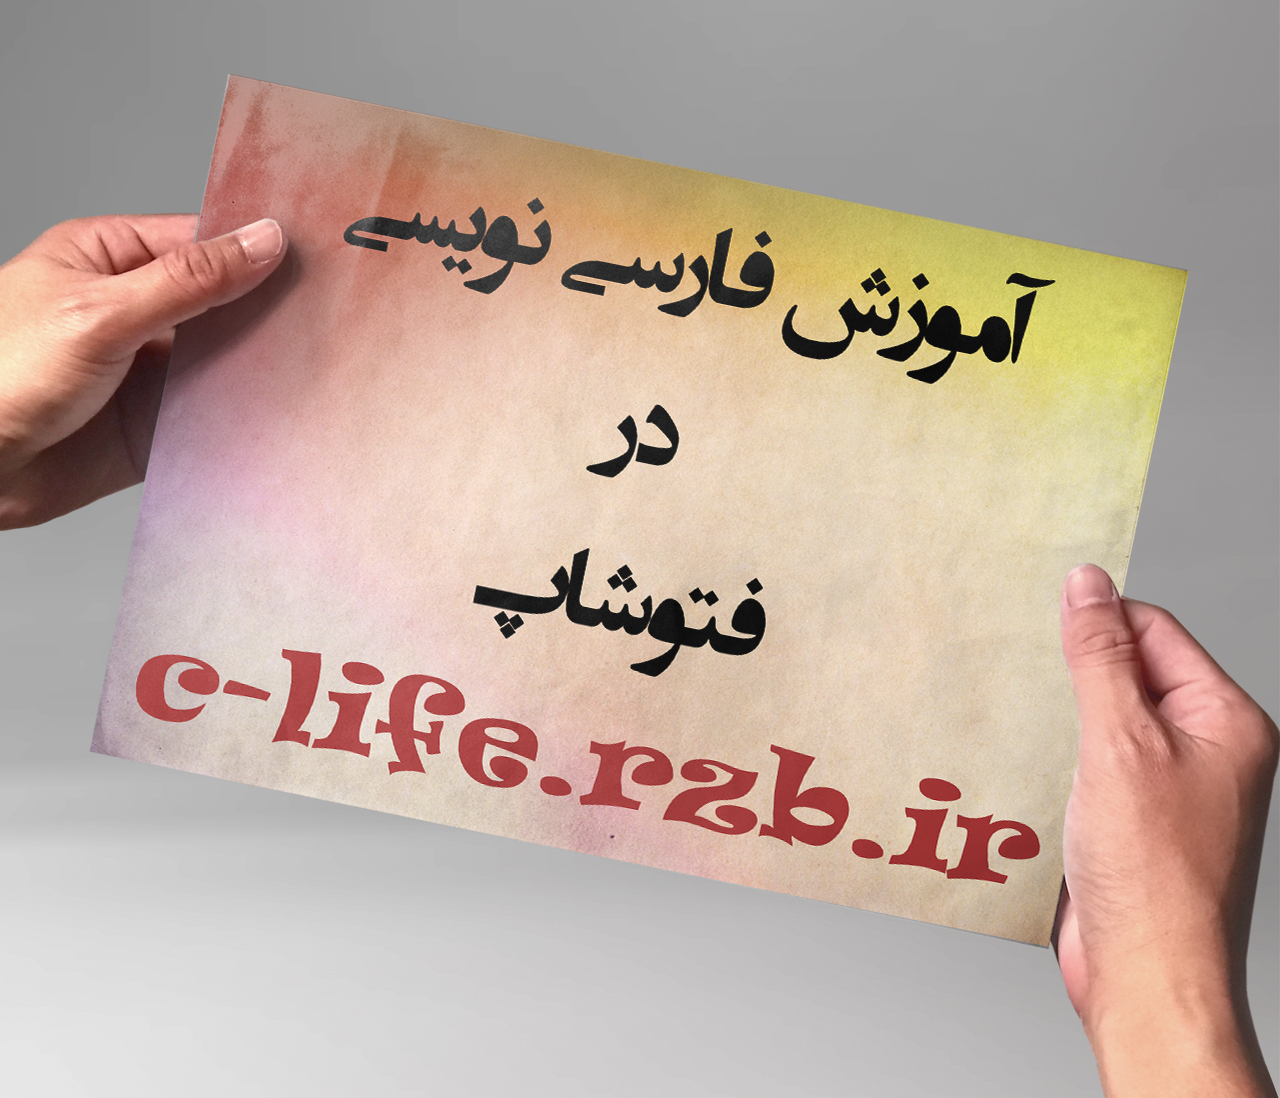 آموزش فارسی نویسی در فتوشاپ - بدون هیچ نرم افزاری